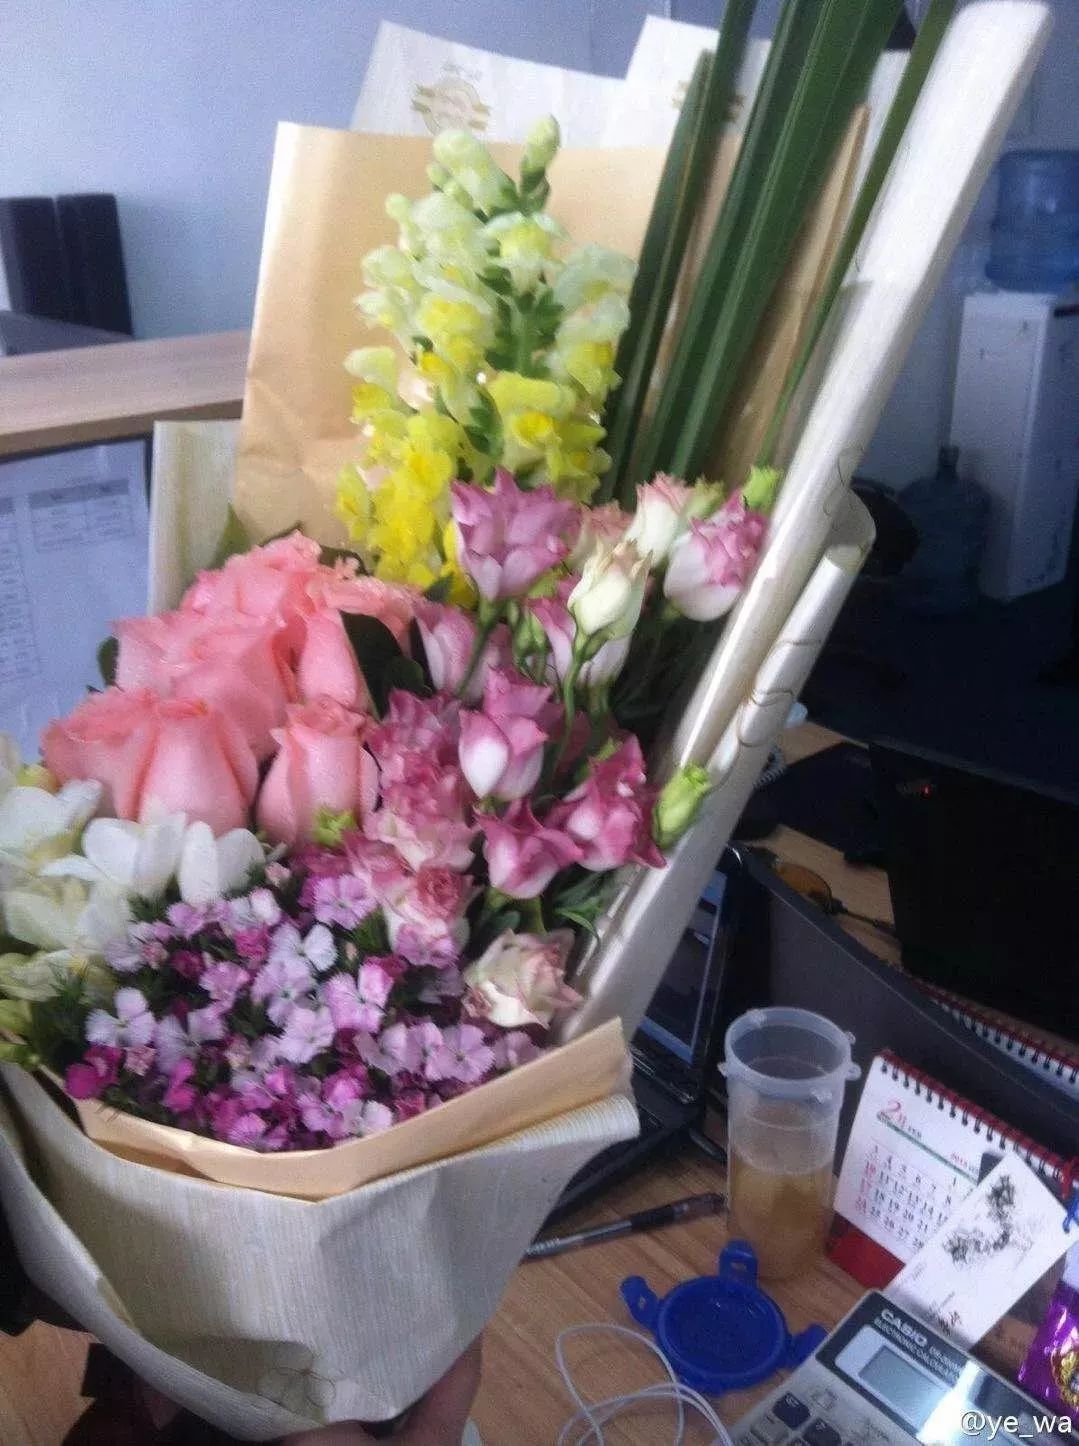 办公室收到鲜花,感叹谁送的